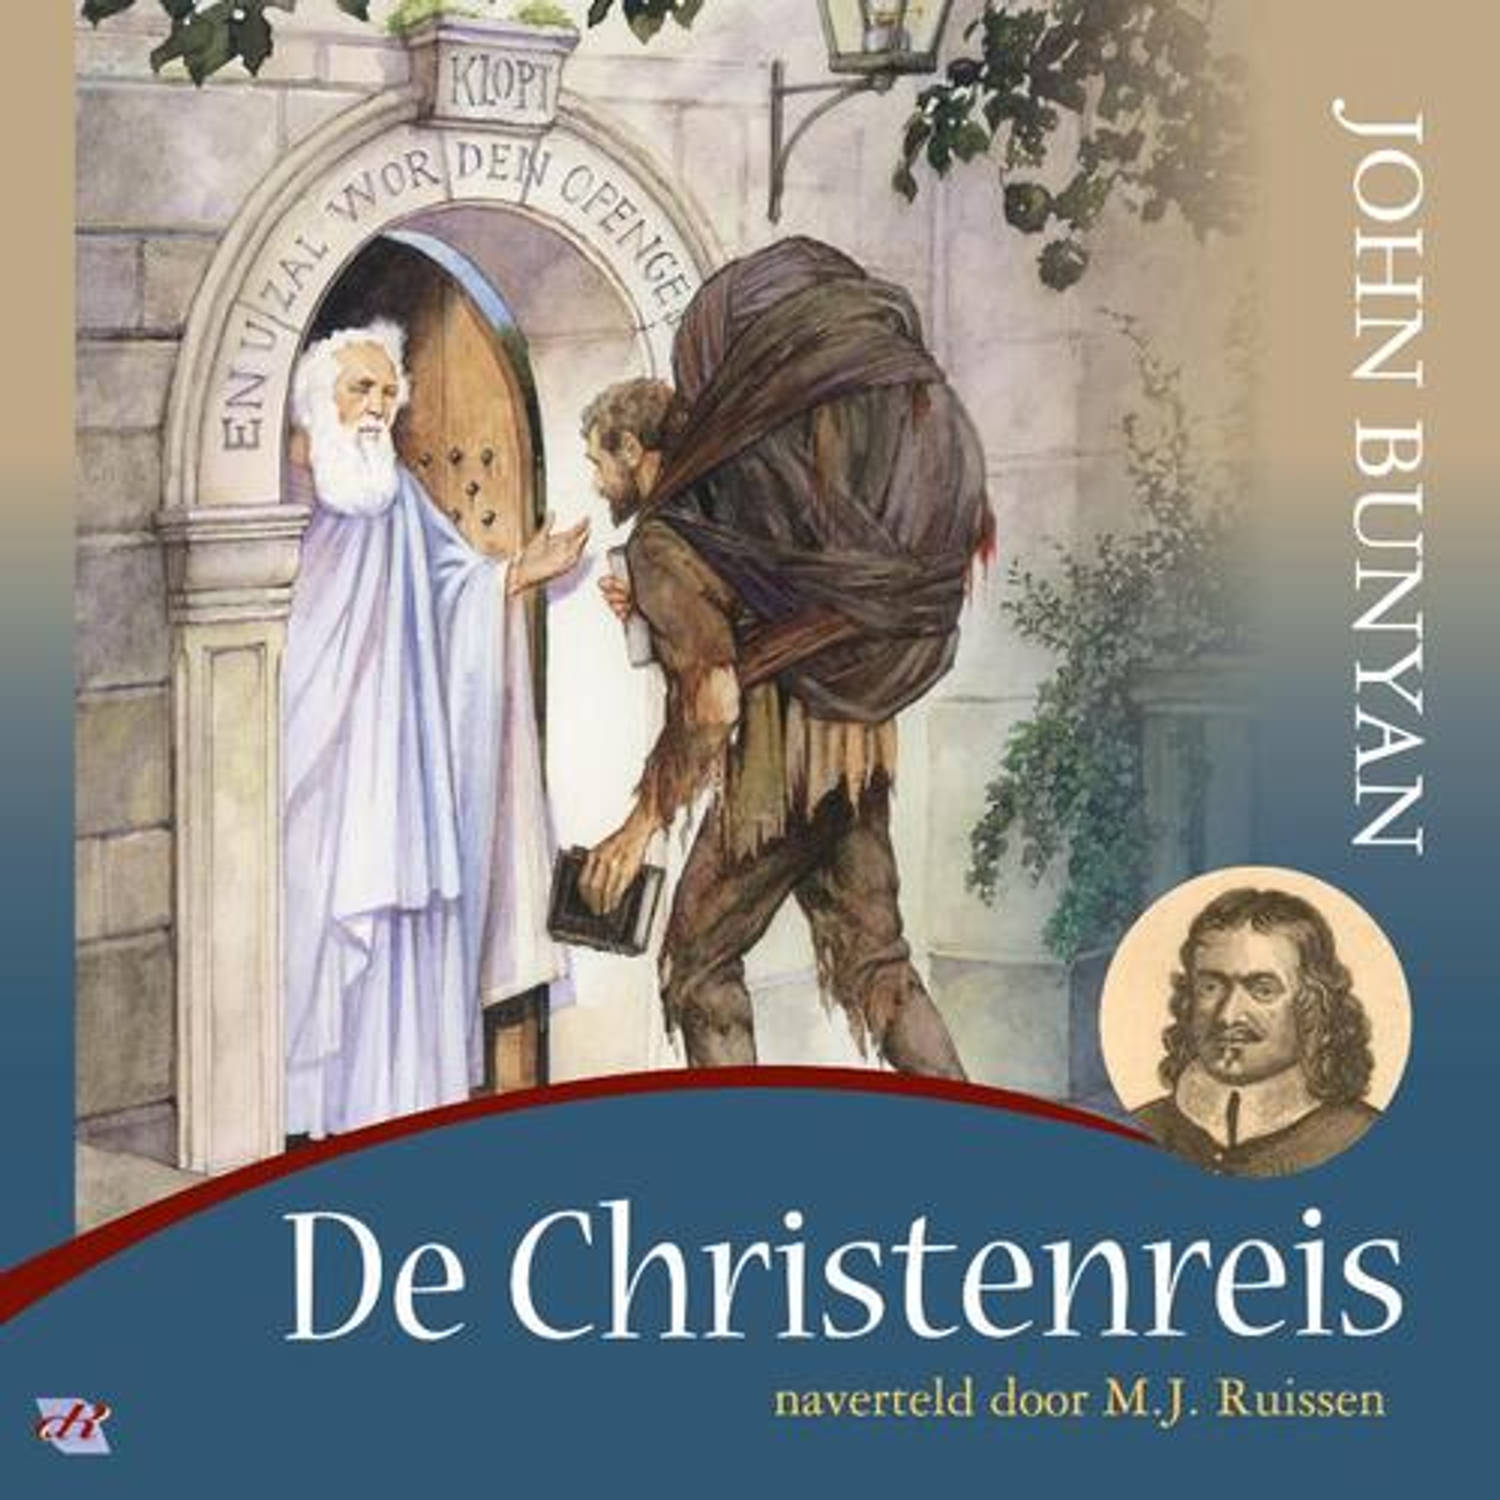 De Christenreis. naverteld door M.J. Ruisssen, John Bunyan, Audio Visuele Media